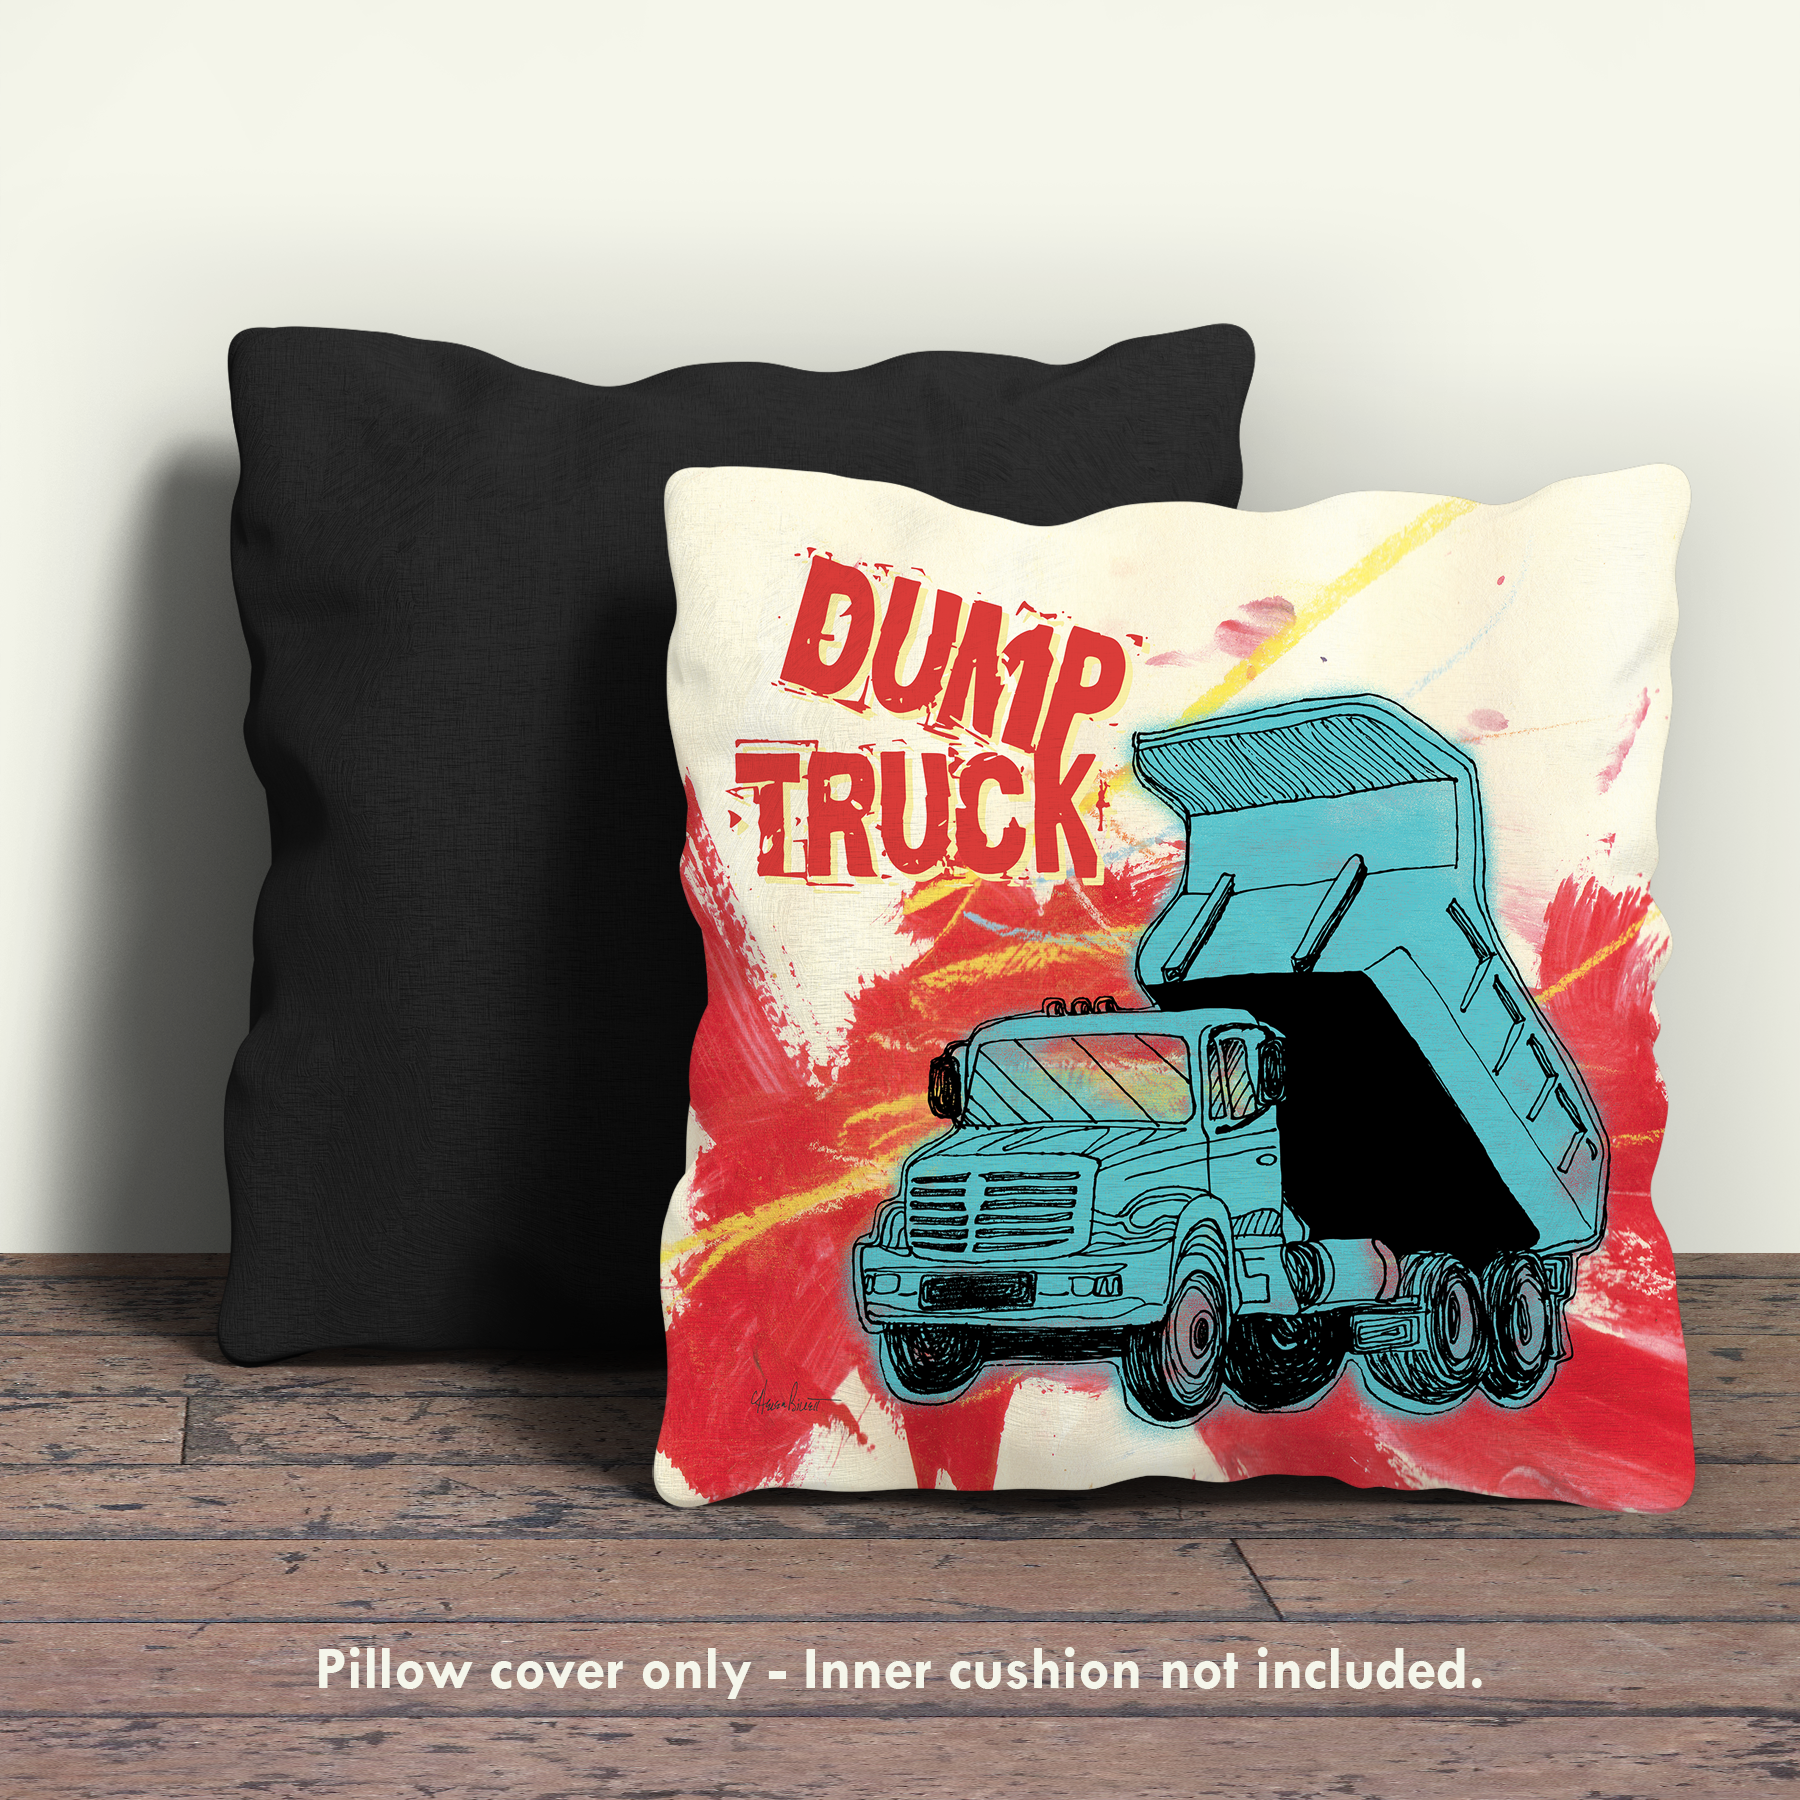 Dump Truck Pillow Cover - Helen Billett art & design